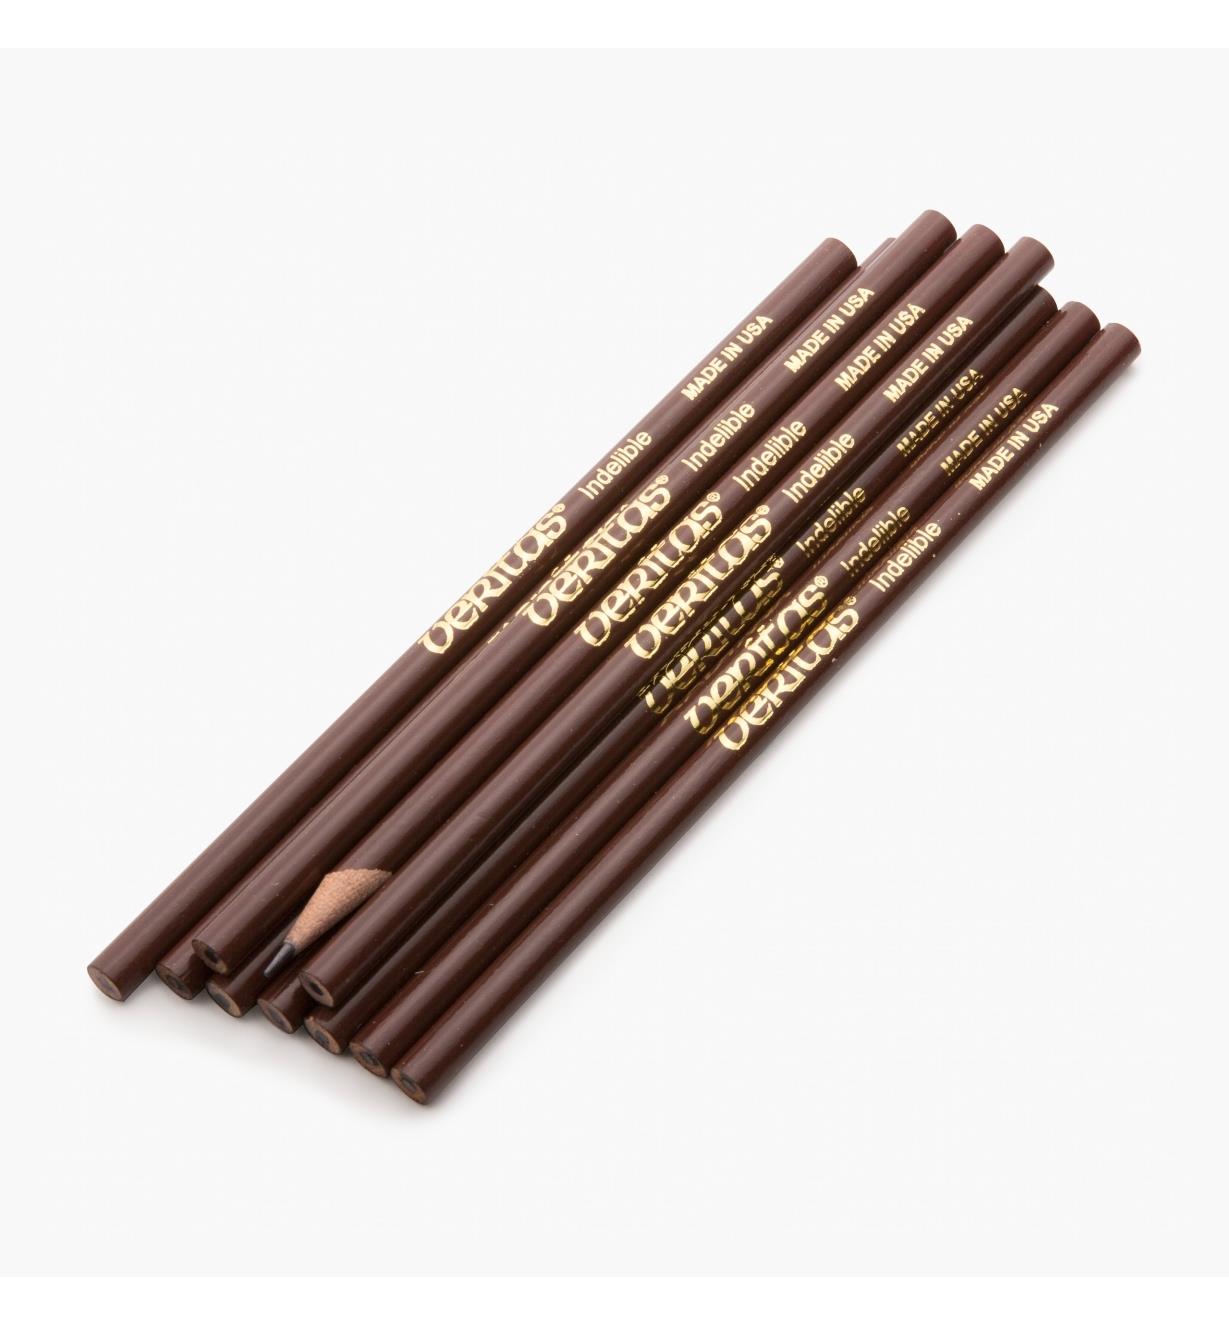 83U0116 - Purple Pencils, package of 10